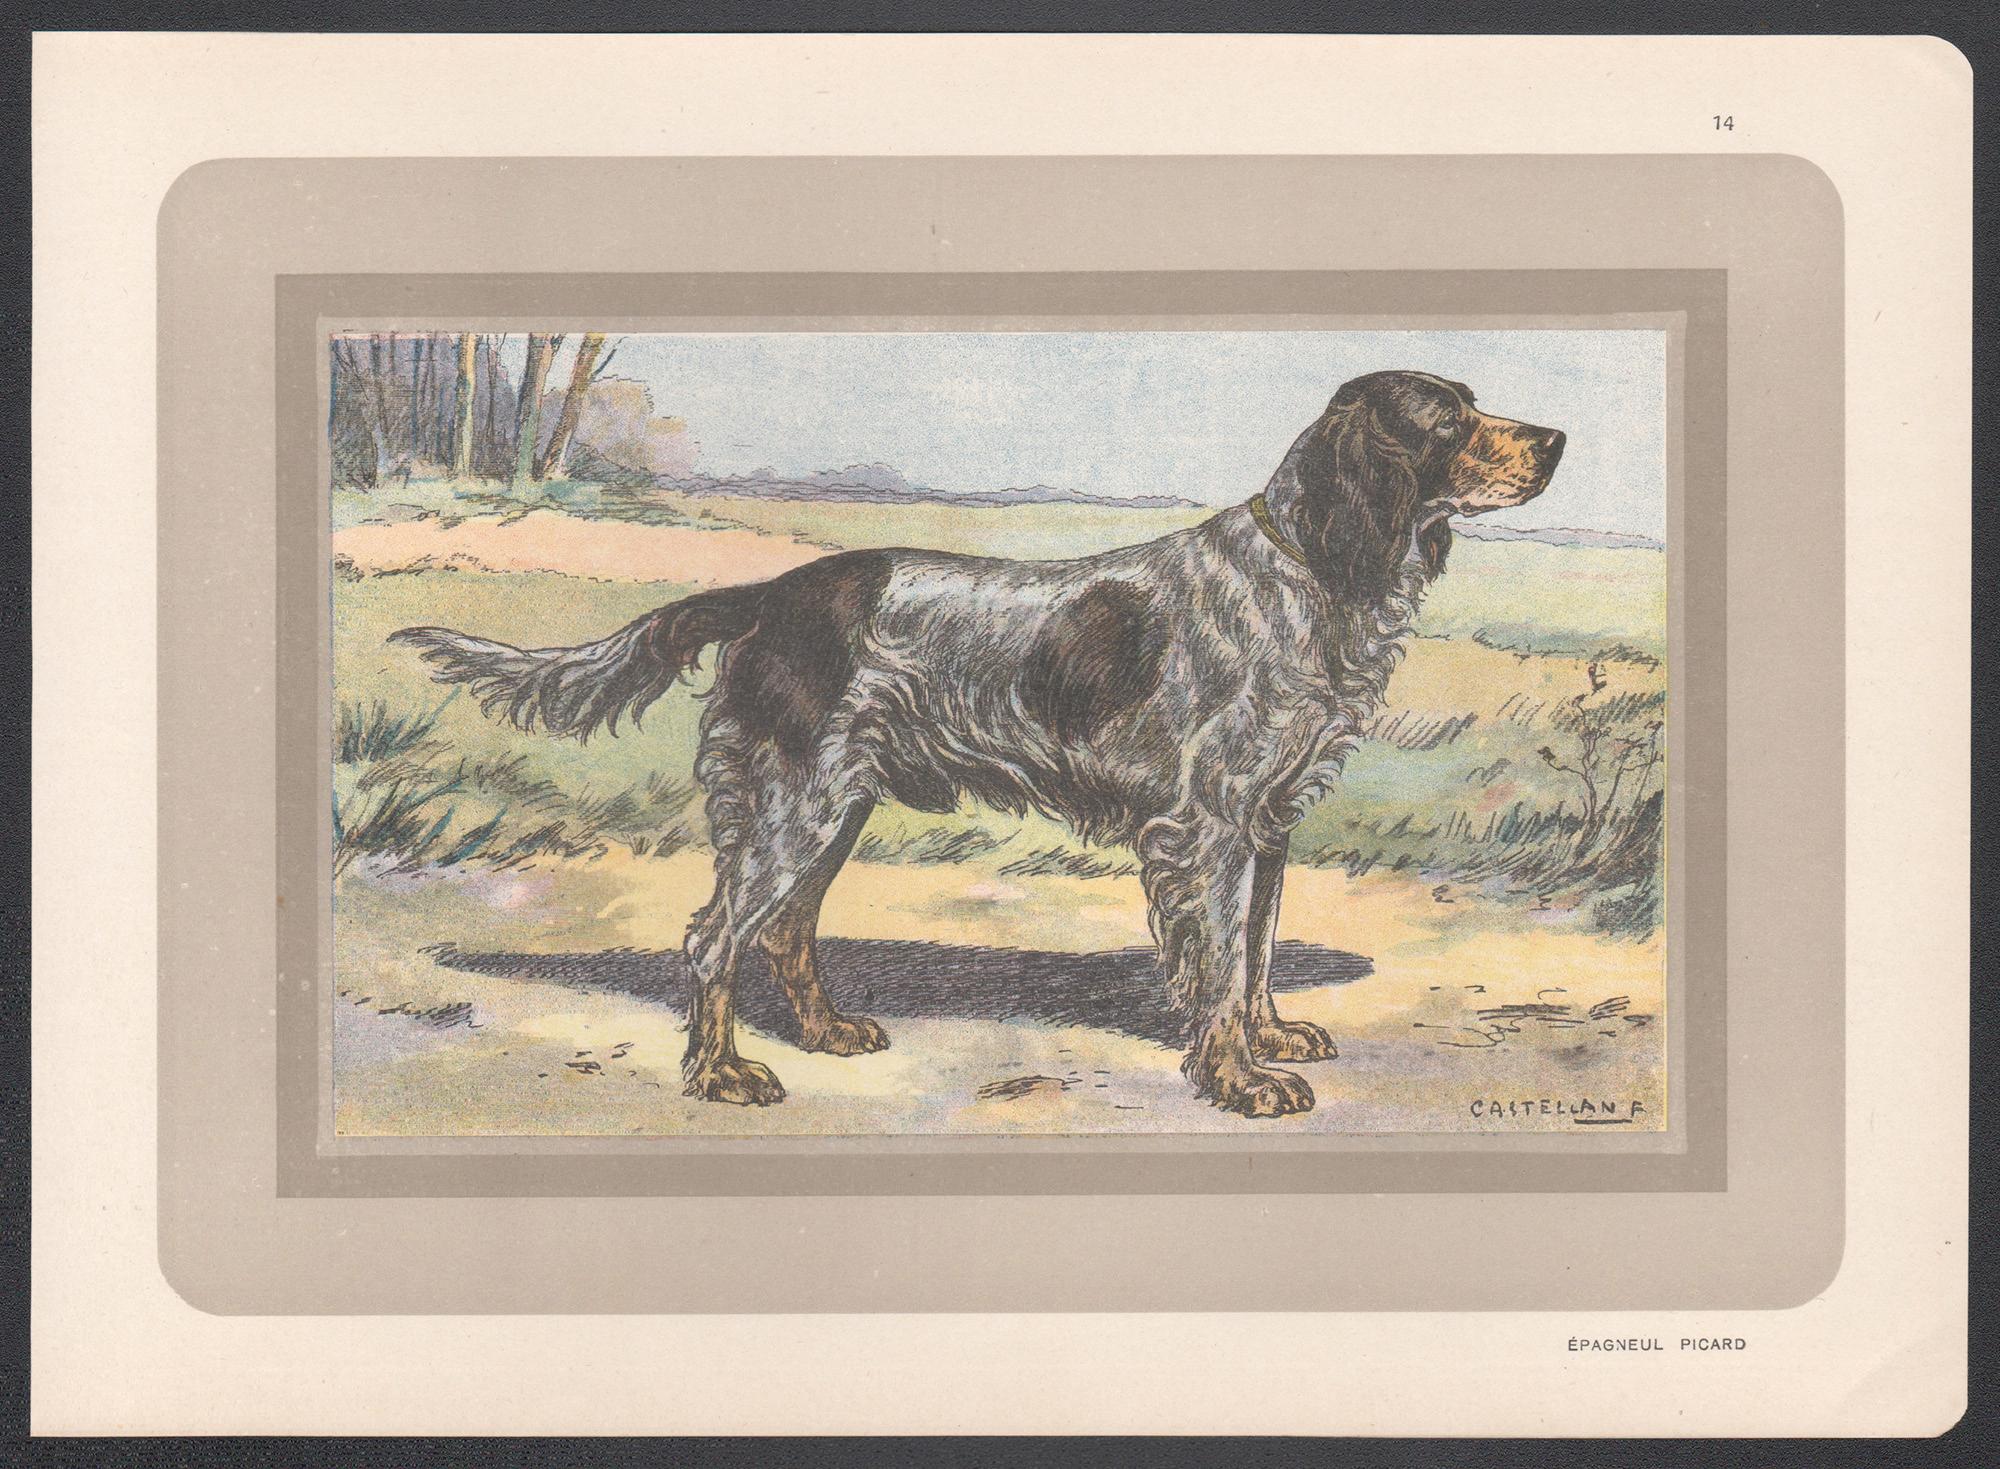 Picardy Spaniel, impression chromolithographie d'un chien de chasse français, 1931 - Print de F Castellan